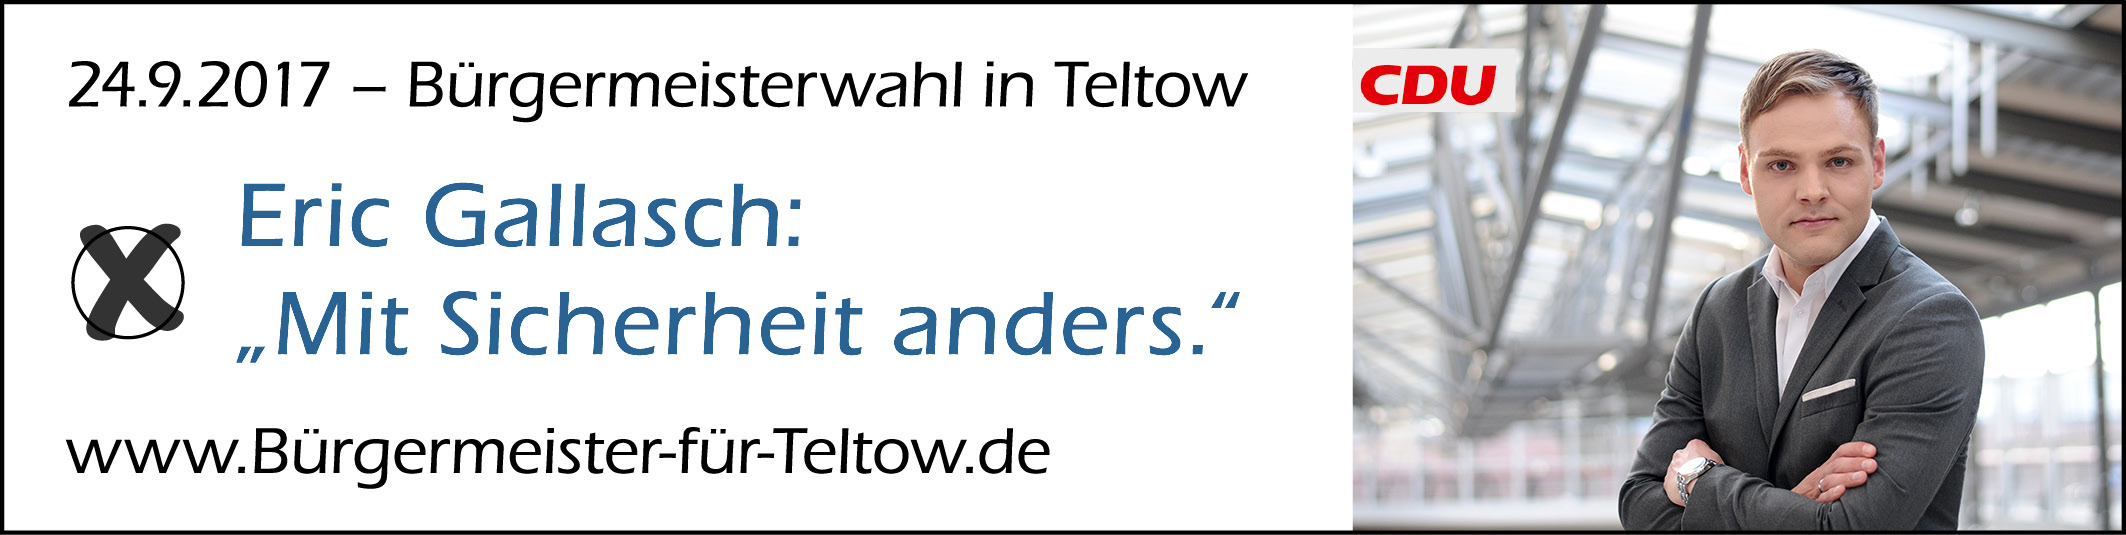 BM-Wah Teltow 2017: CDU-Kandidatl Eric Gallasch